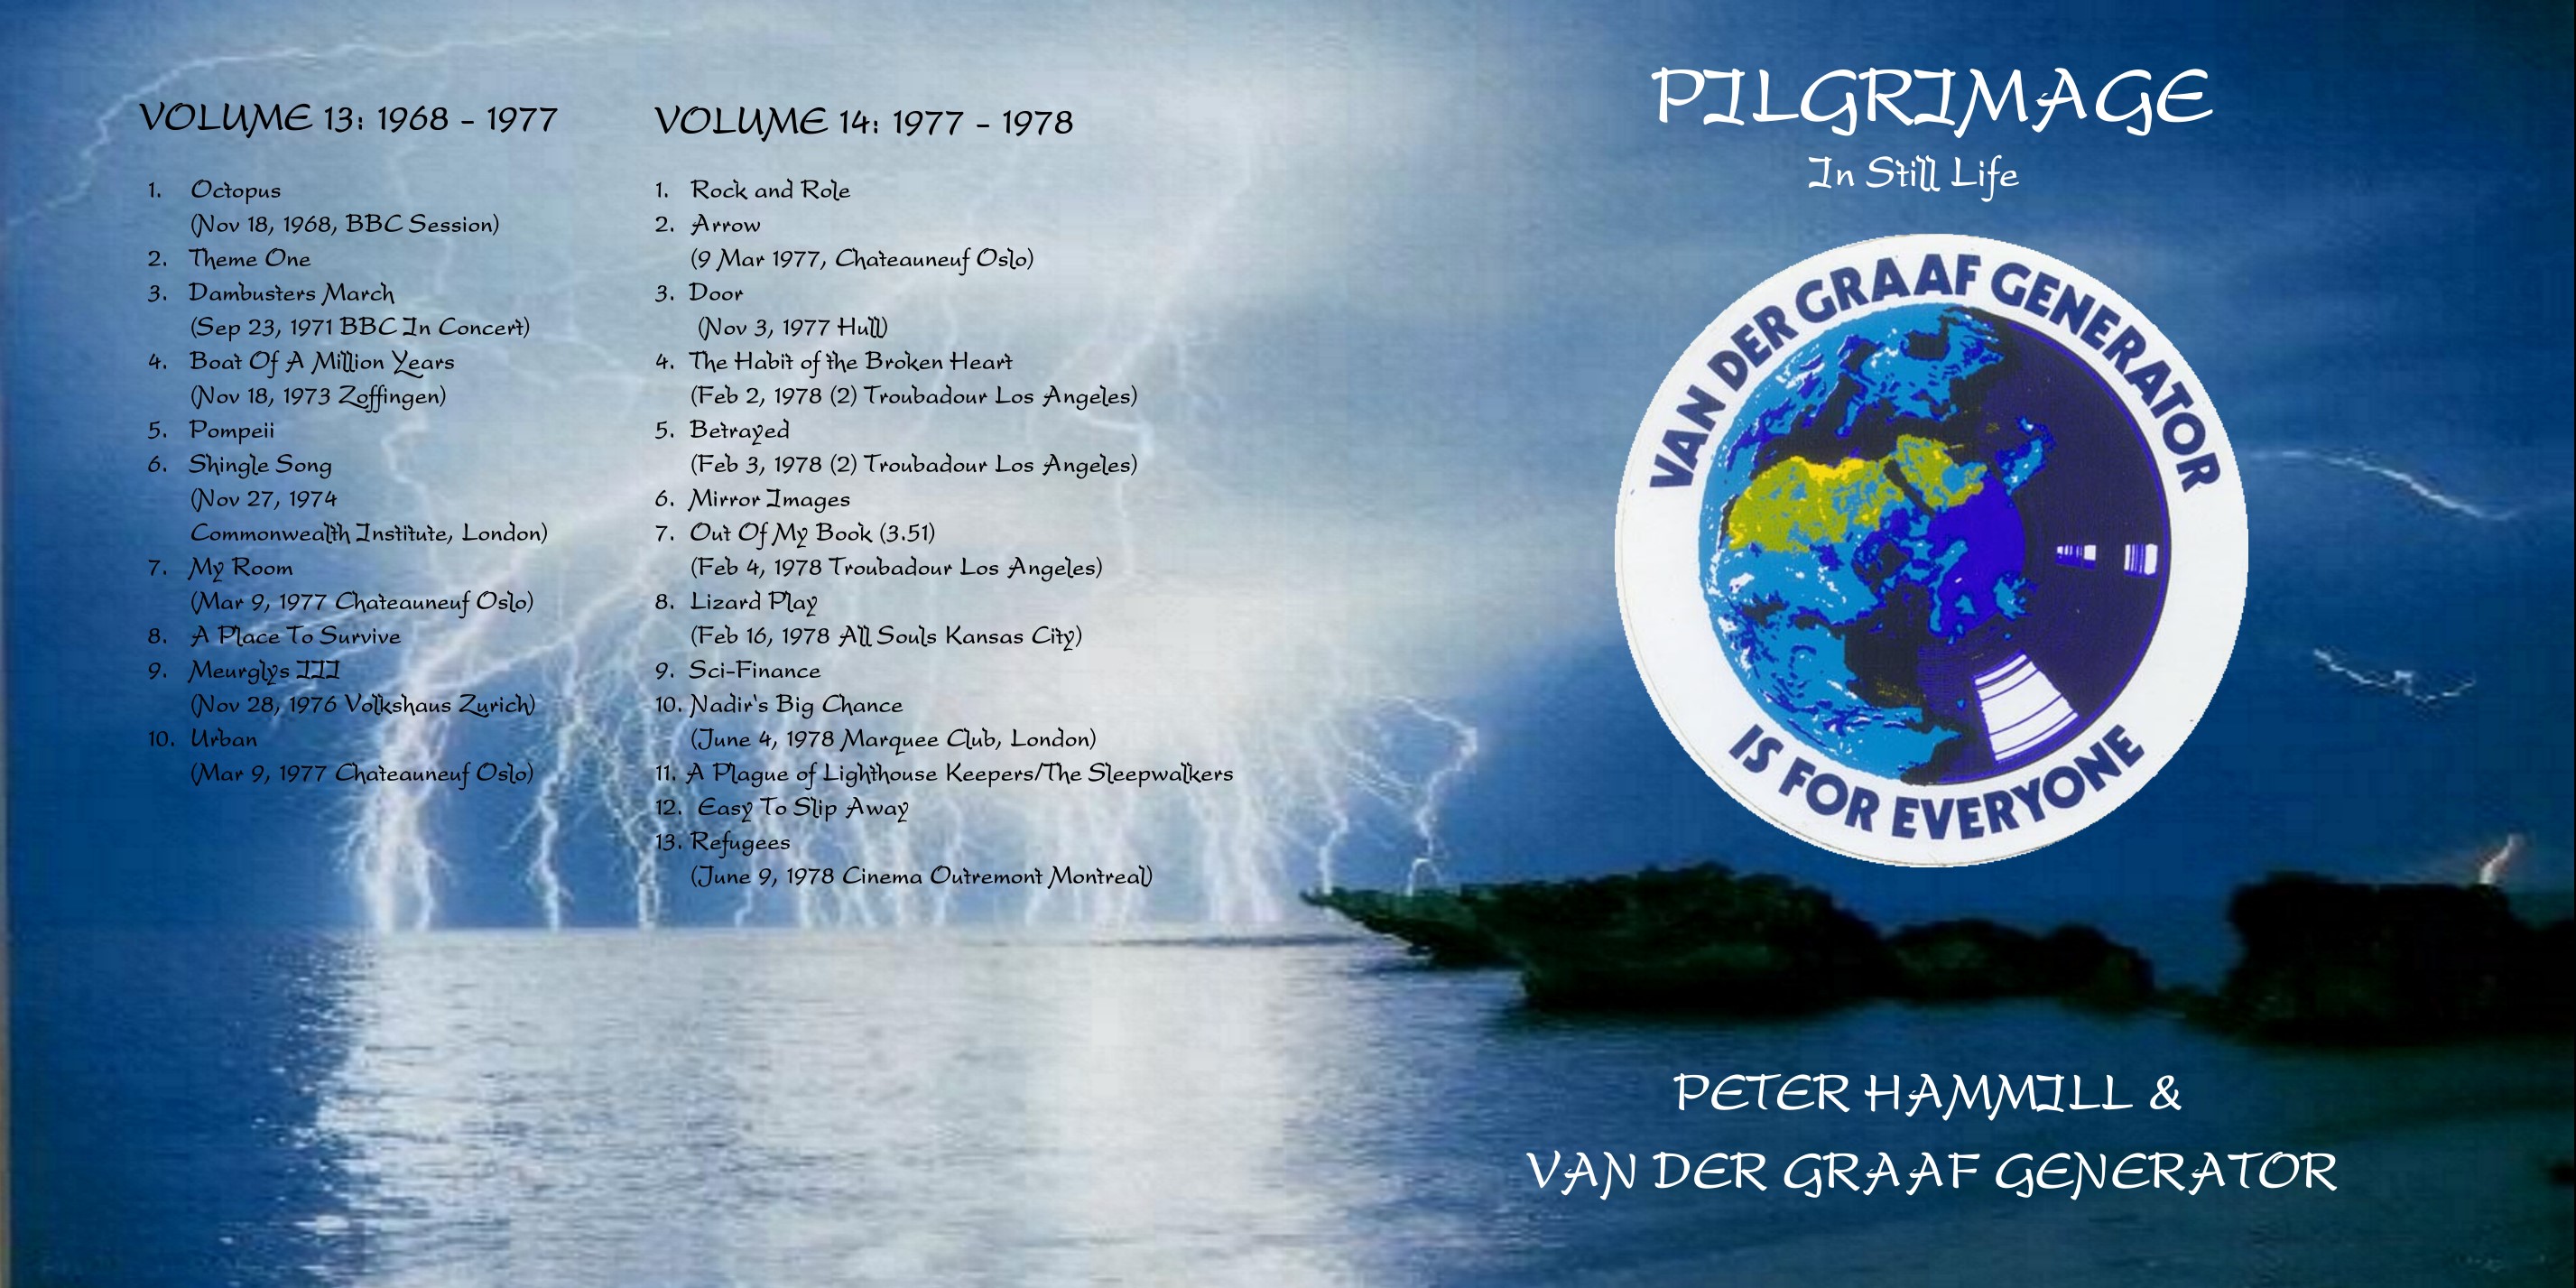 VanDerGraafGeneratorPeterHammill1970-1986Pilgrimage_pt7 (3).jpg